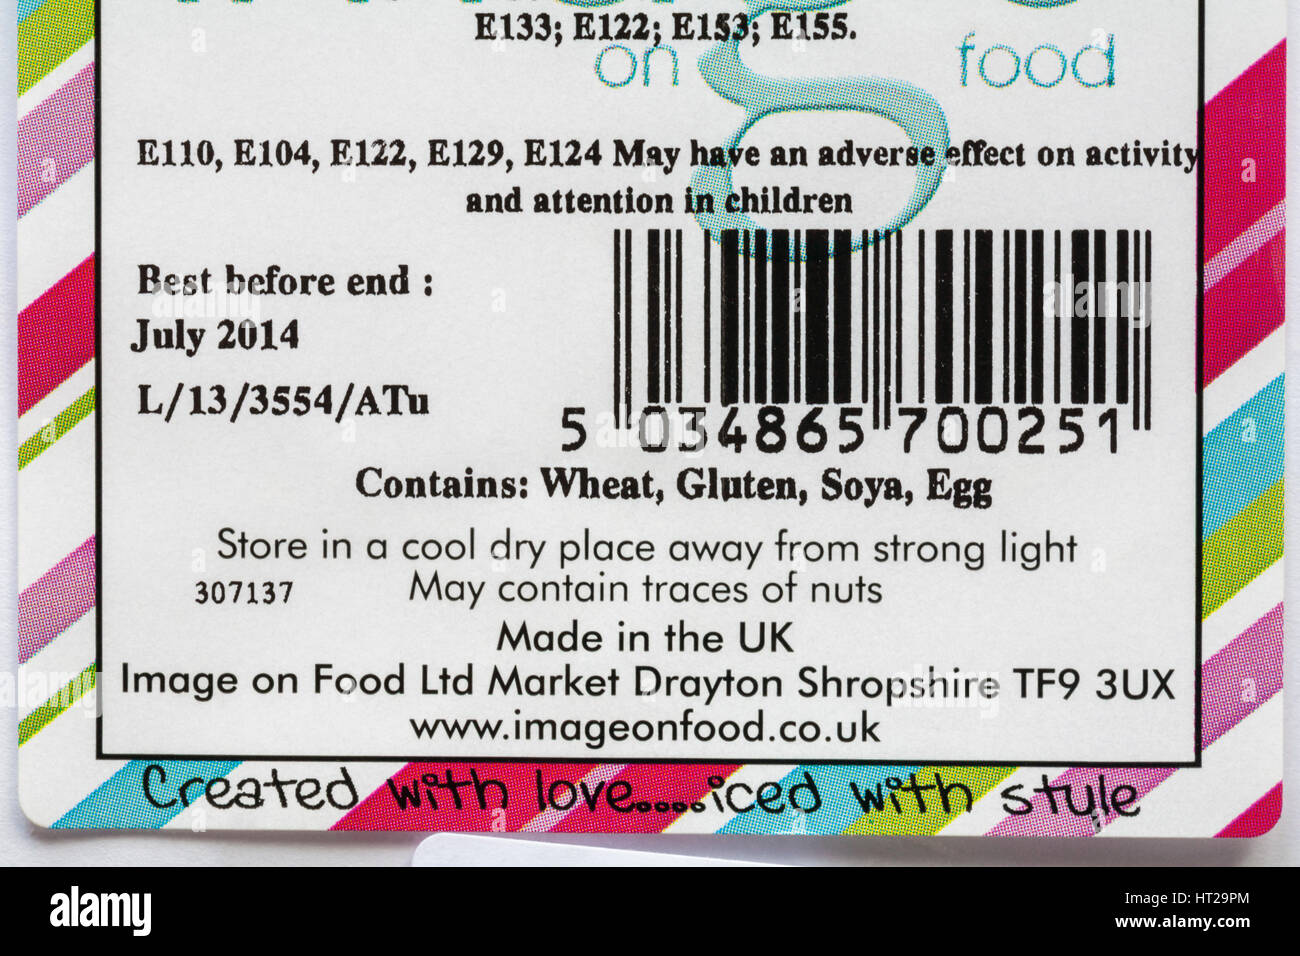 Informationen zeigt E-Nummern kann sich nachteilig auf die Aktivität und Aufmerksamkeit bei Kindern haben. Enthält Weizen Gluten Soja Ei. Made in UK. Essen Stockfoto